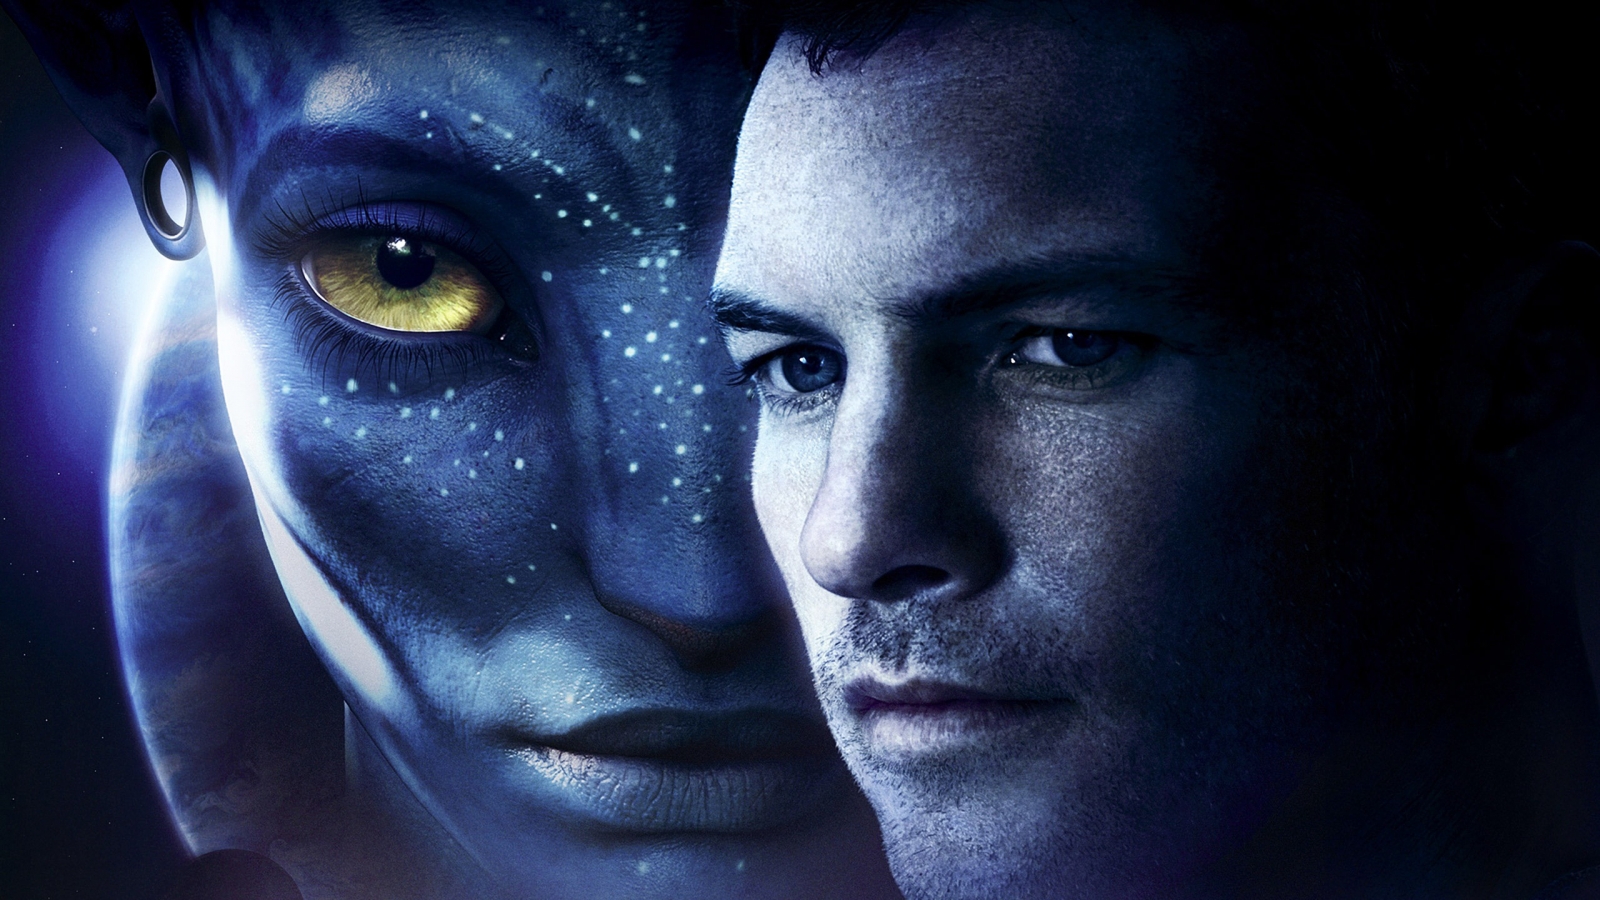 Avatar 2 2014 for 1600 x 900 HDTV resolution